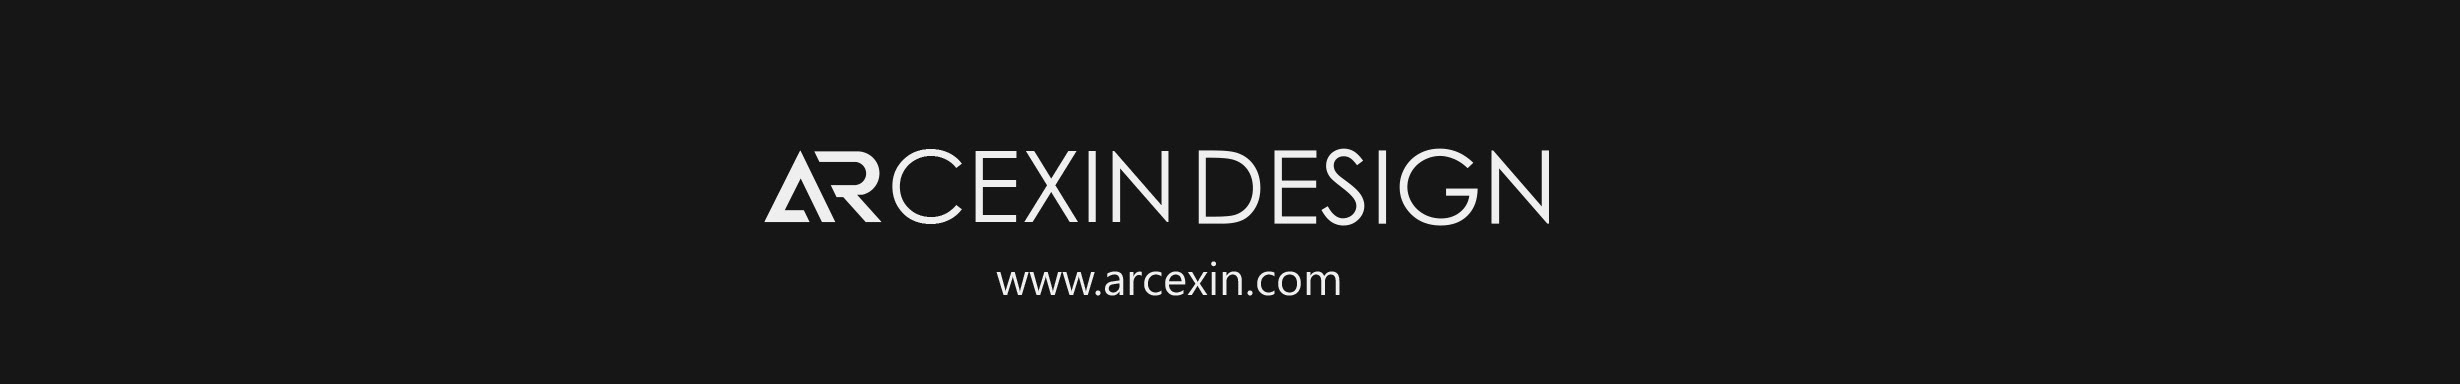 Arcexin Design's profile banner